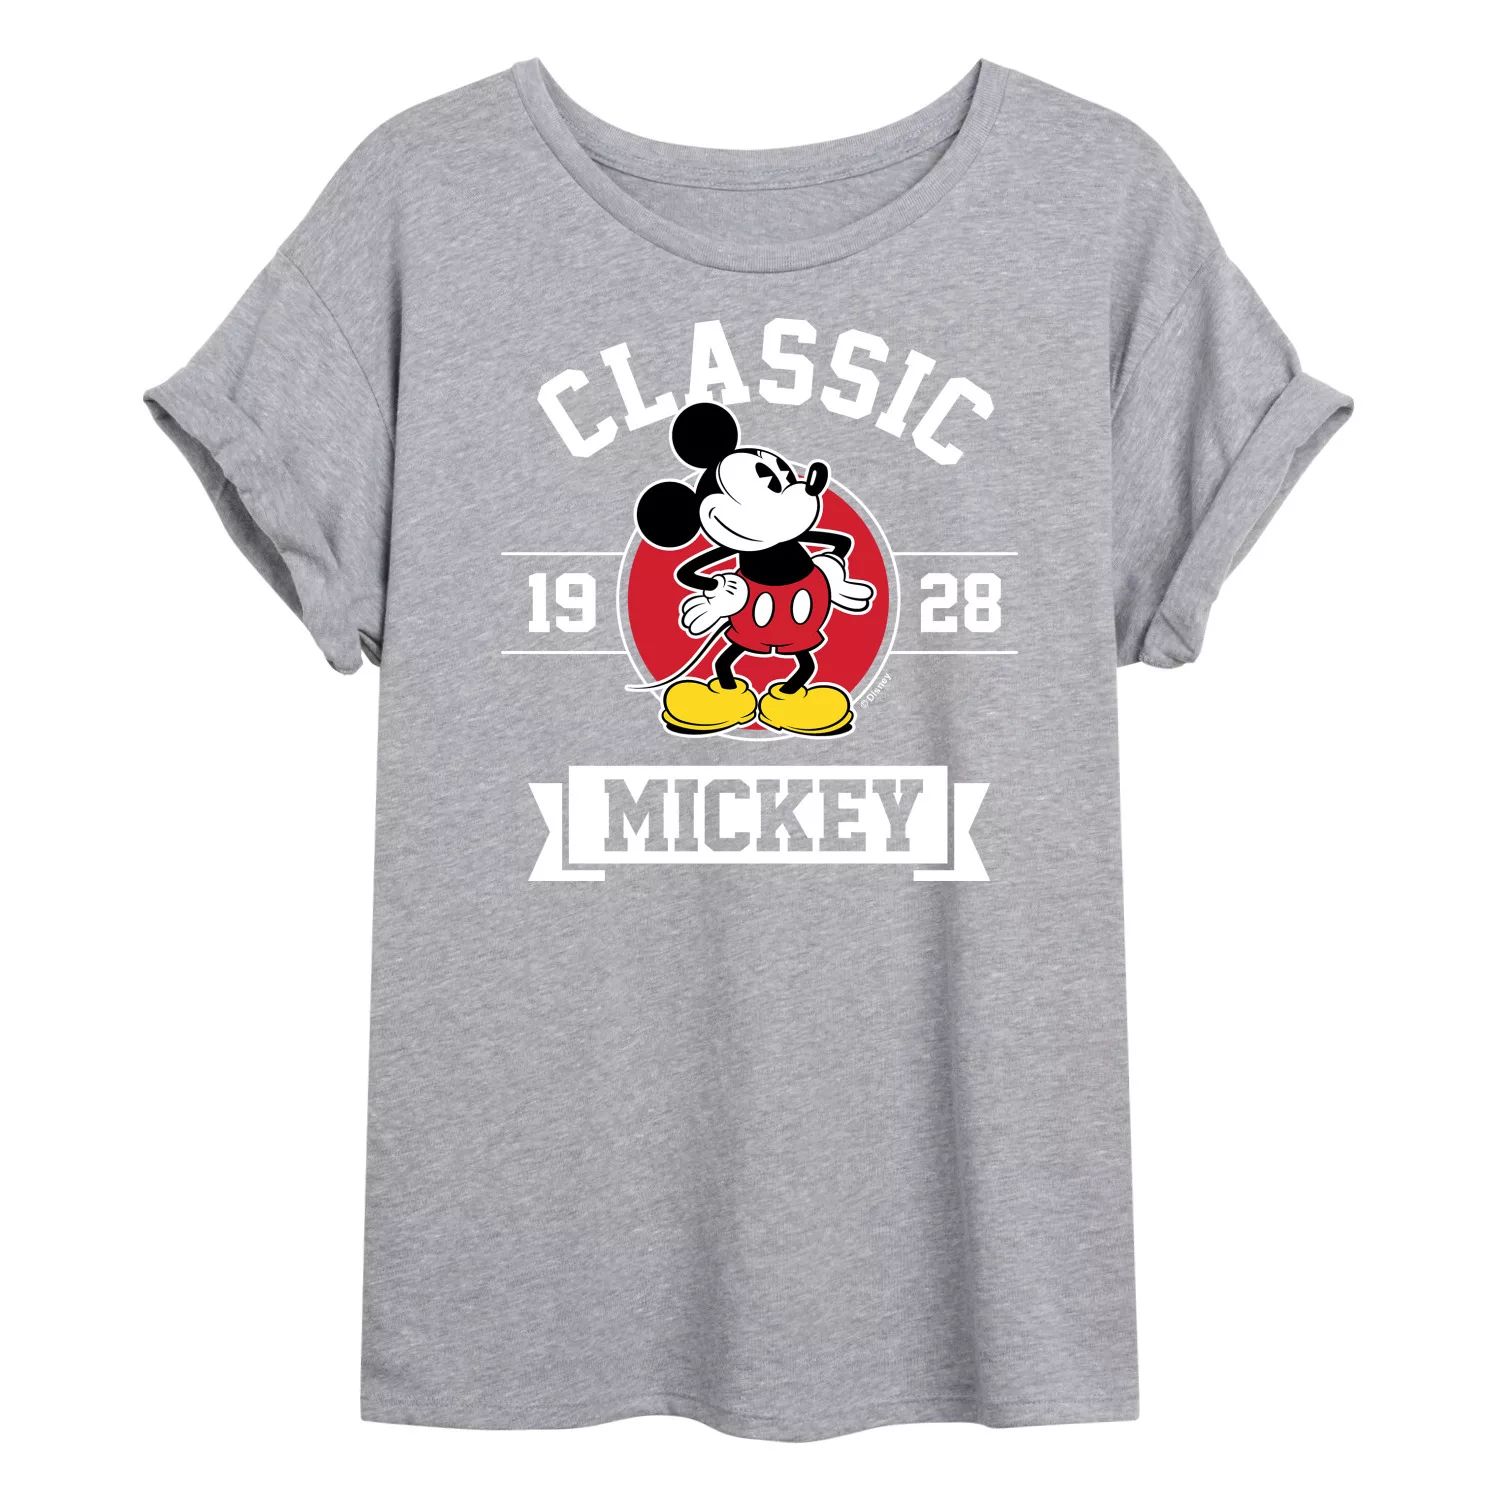 Классическая футболка Disney's Mickey Mouse для детей с струящимся рисунком Микки Мауса Disney одноразовая маска для детей и взрослых disney защитный чехол для лица с рисунком аниме дональд дак с рисунком микки мауса для детей